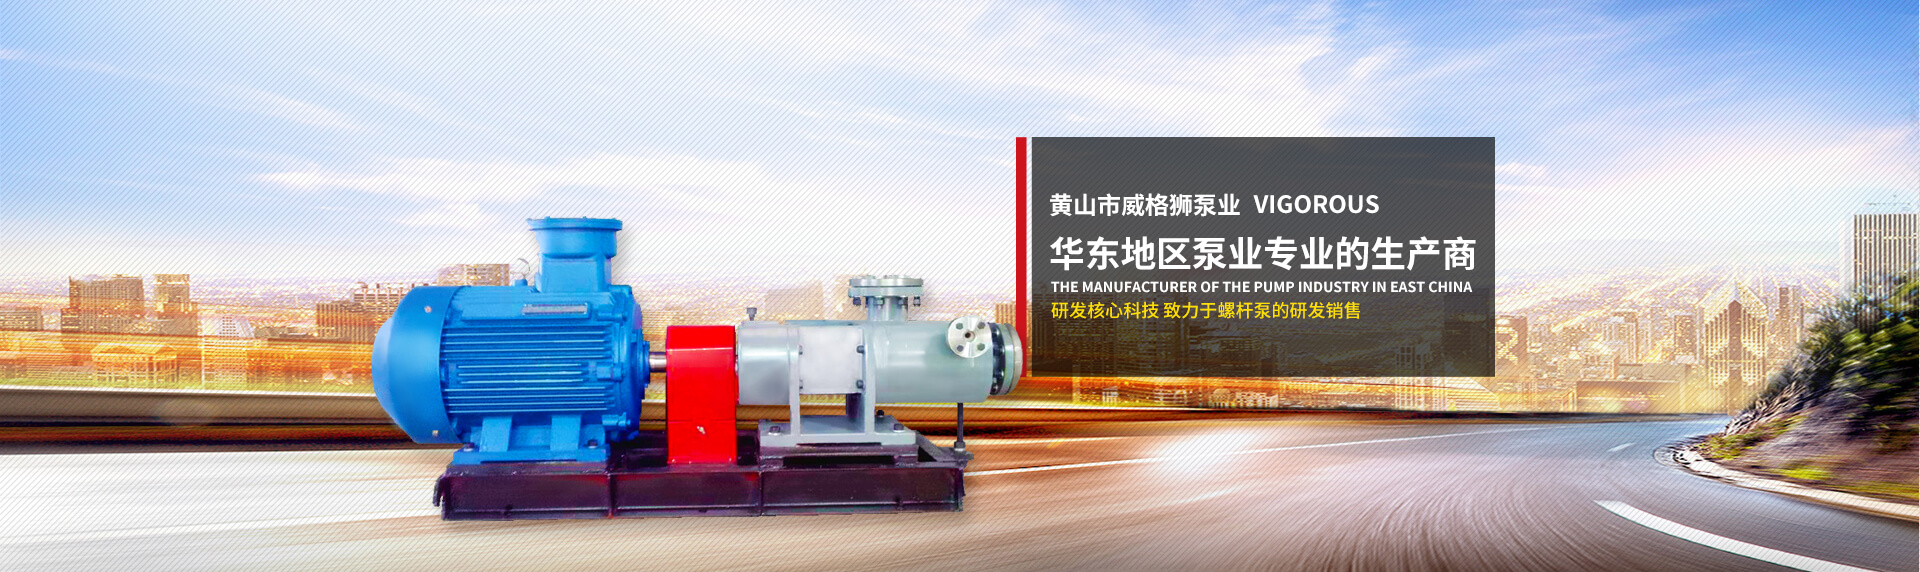 黃山市威格獅泵業  華東地區泵業專業的生產商